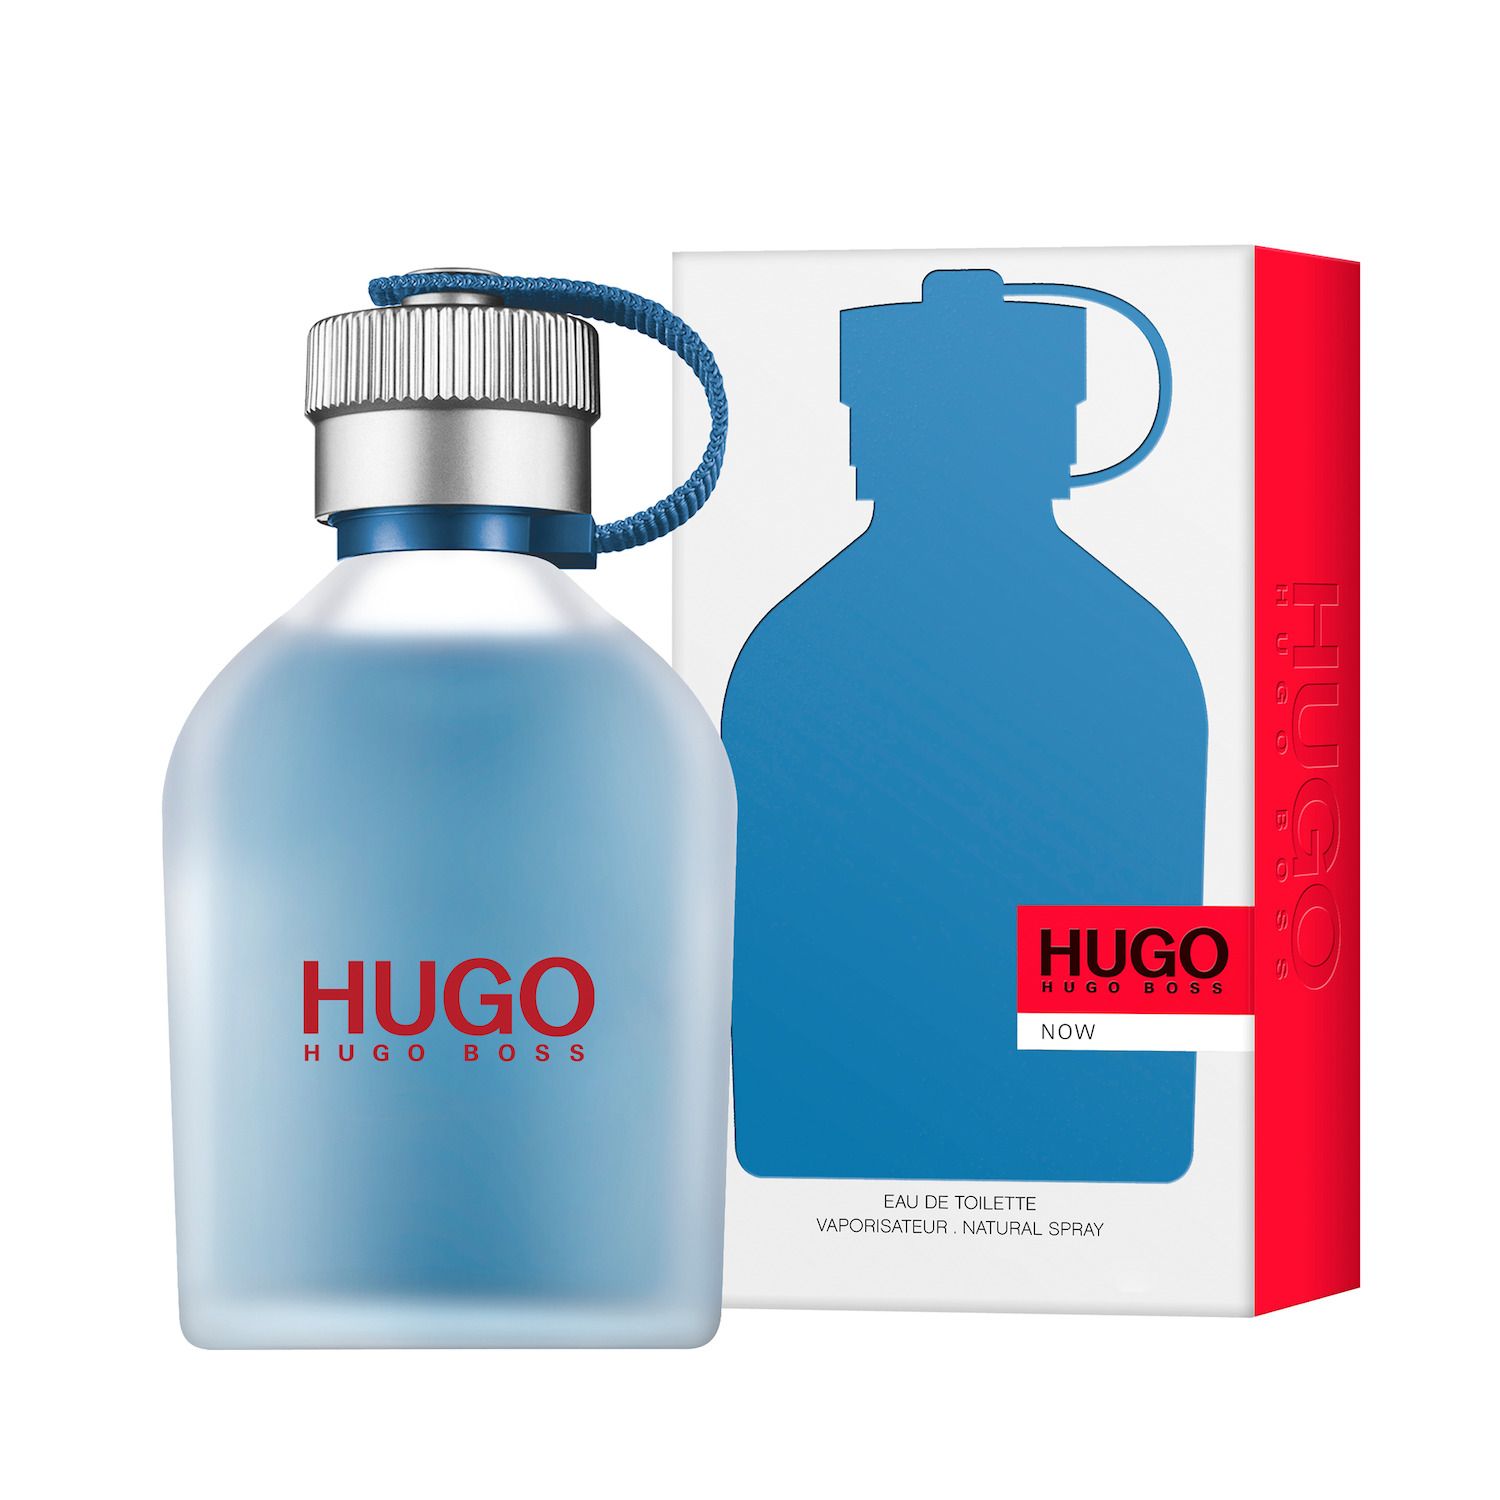 HUGO BOSS Hugo Now Men's Cologne